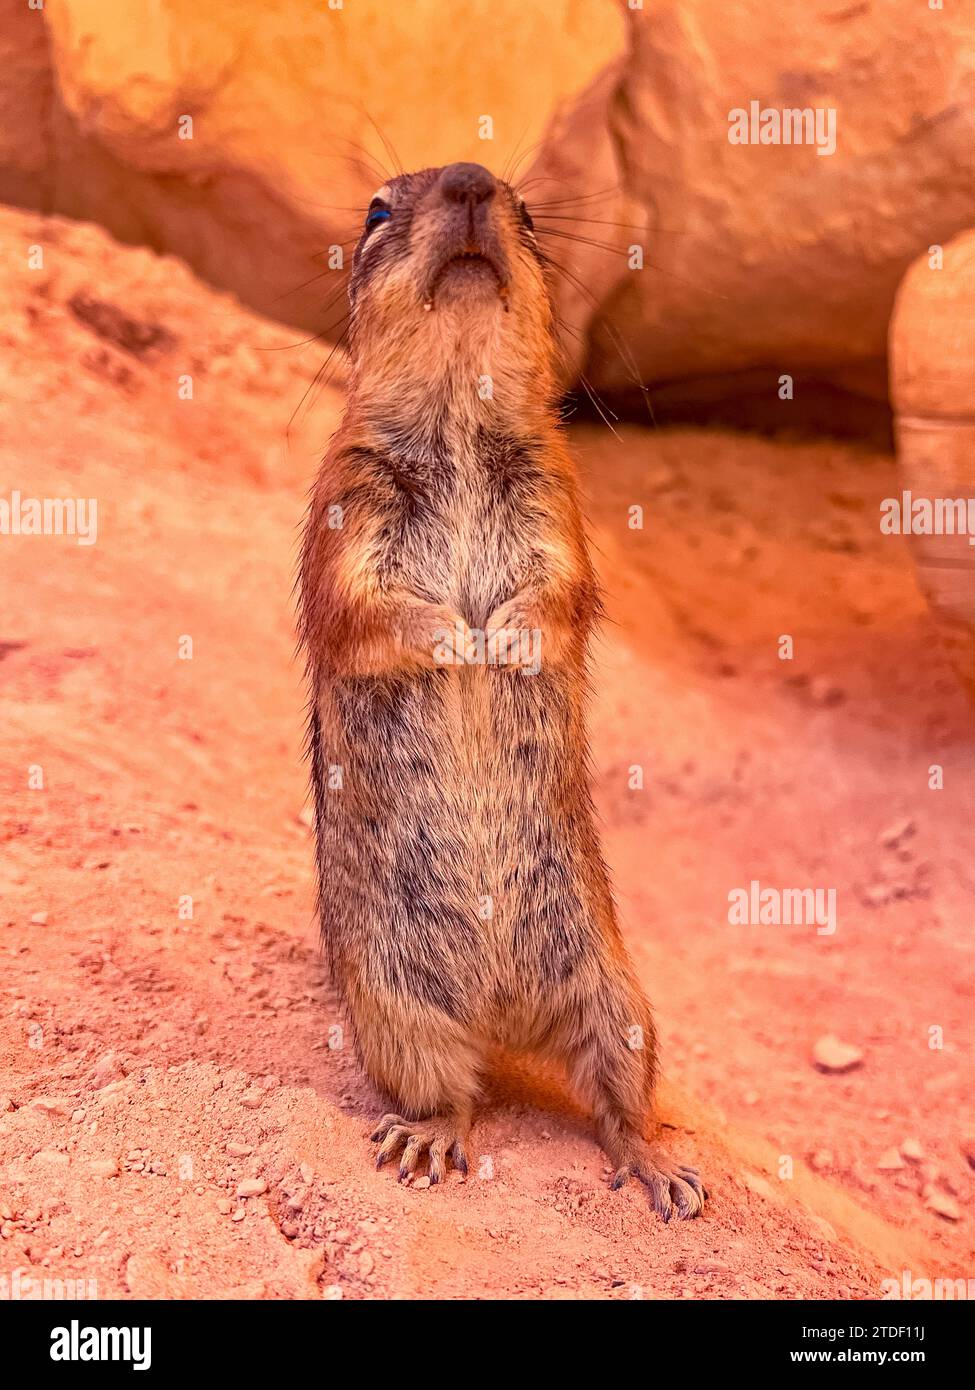 Écureuil mouillé adulte (Callospermophilus lateralis), dans le parc national de Bryce Canyon, Utah, États-Unis d'Amérique, Amérique du Nord Banque D'Images